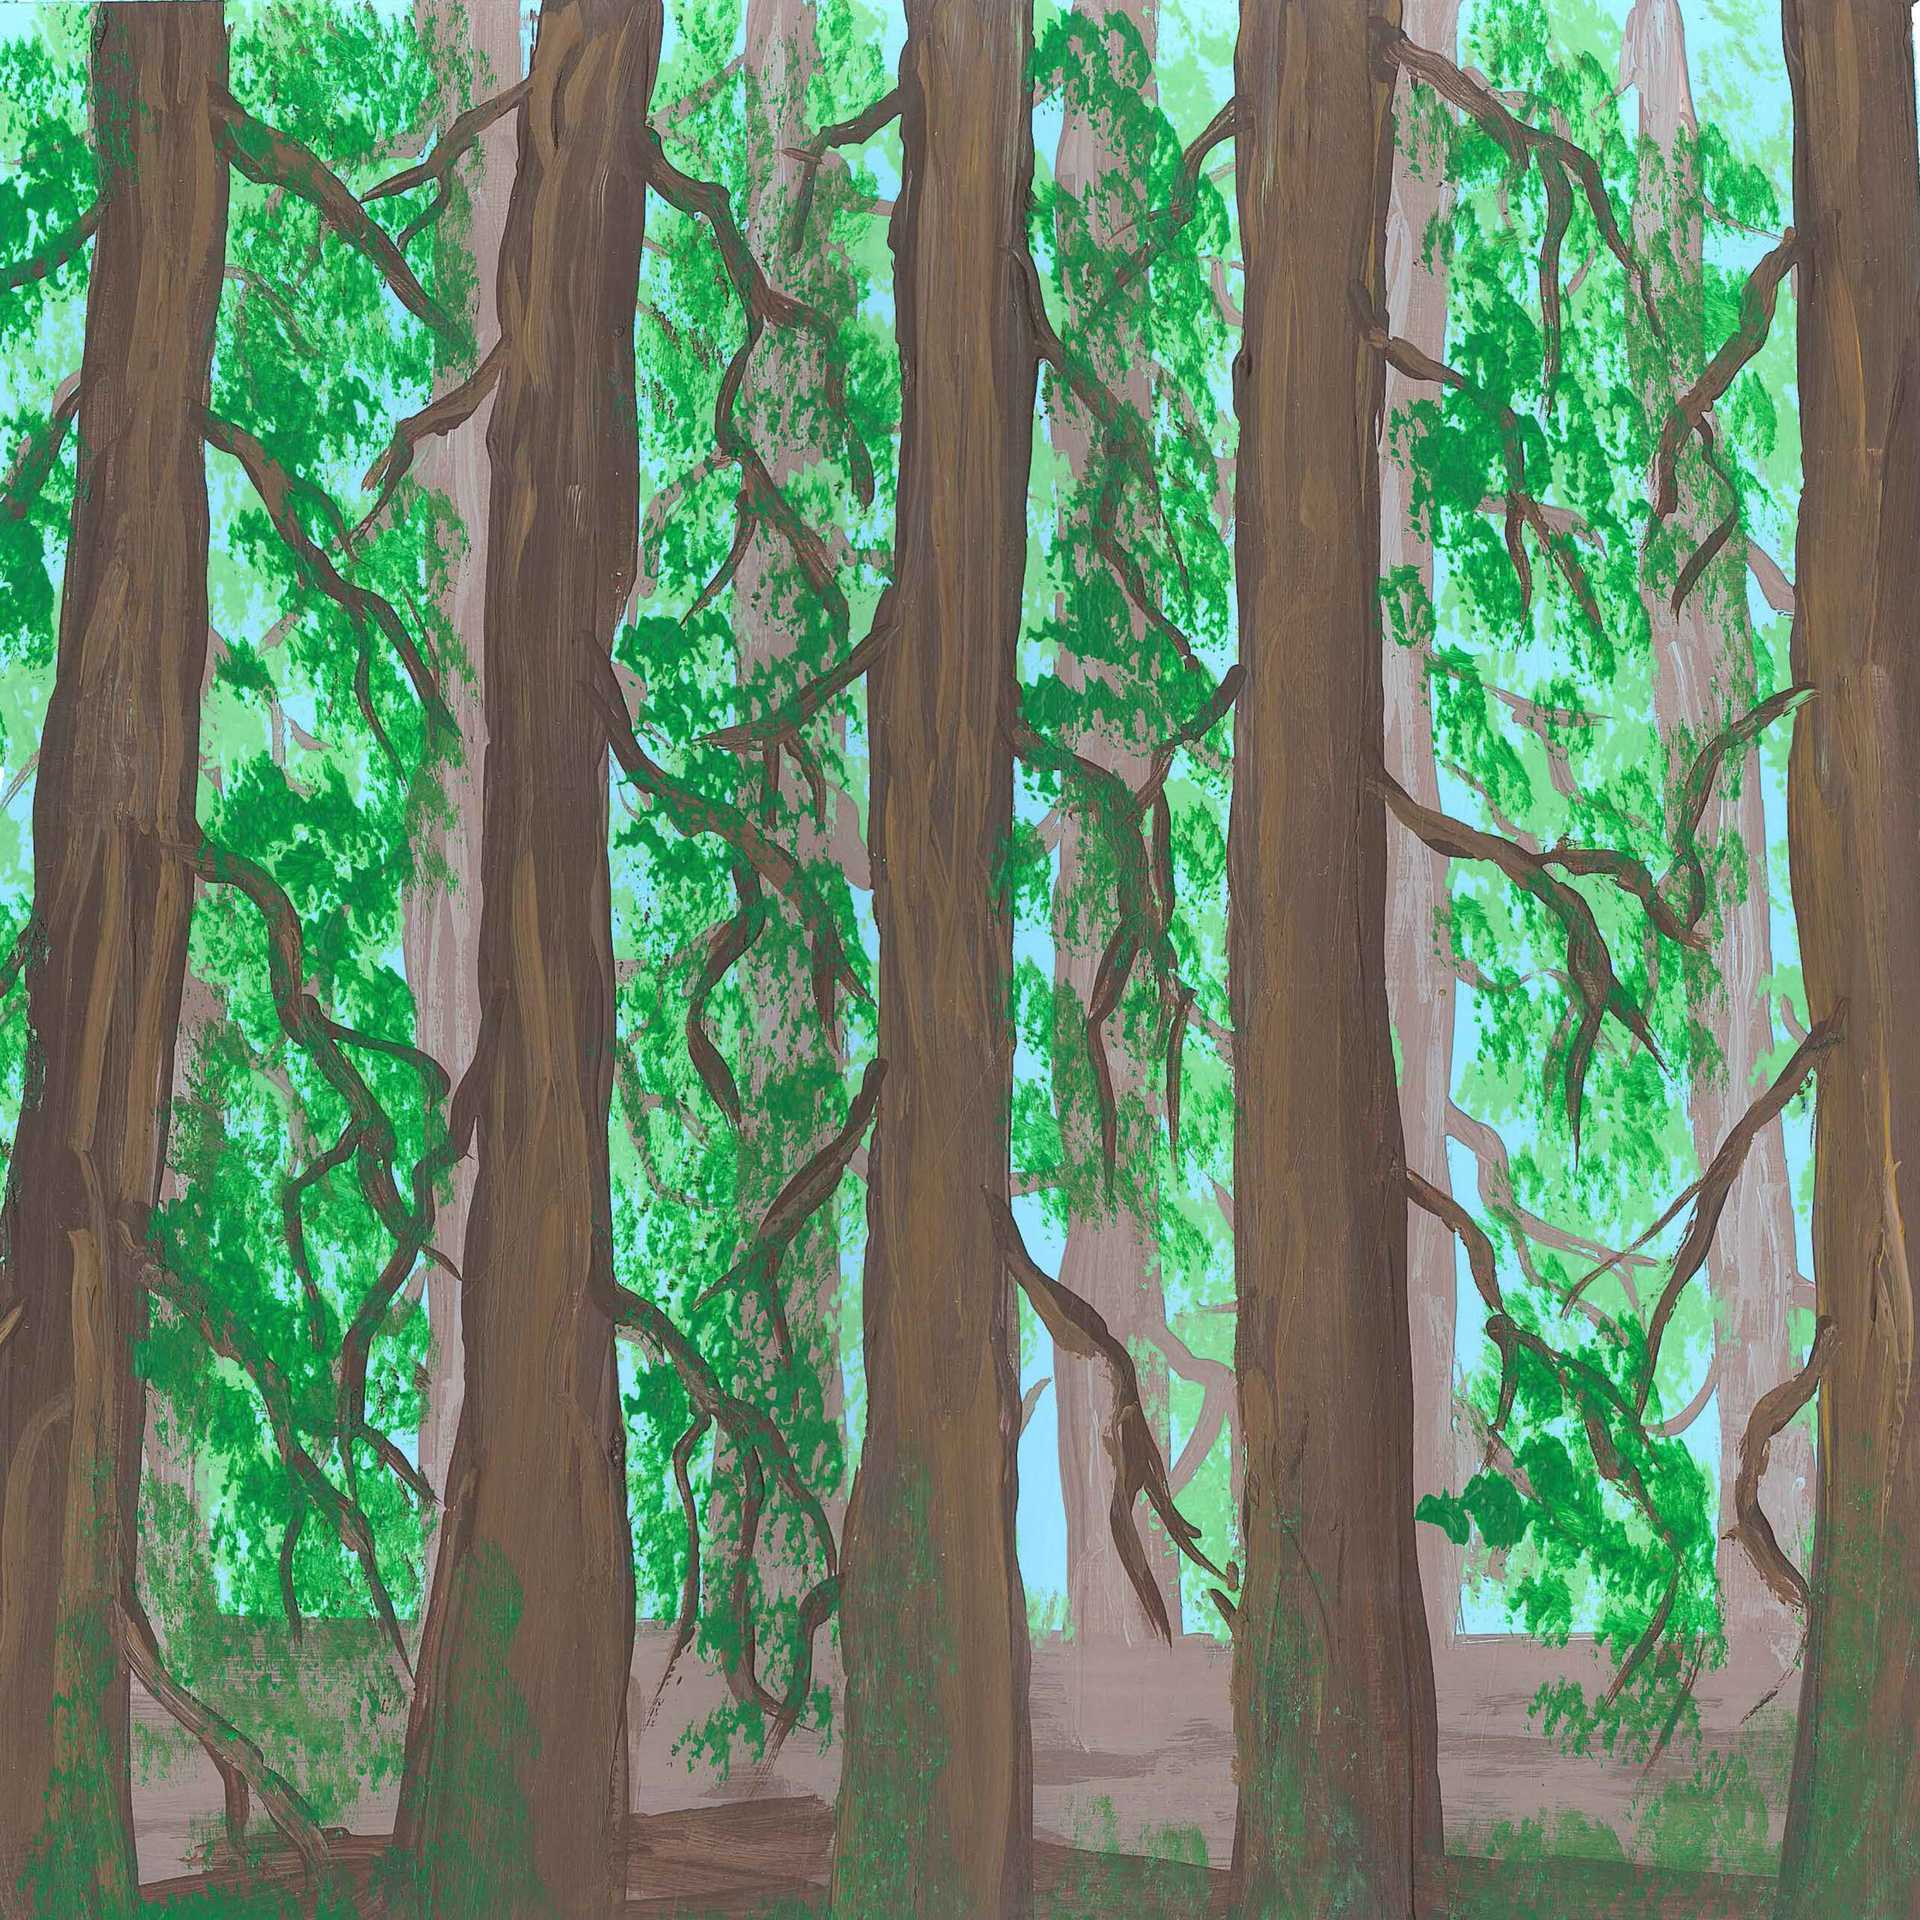 Clayoquot Rainforest - nature landscape painting - earth.fm